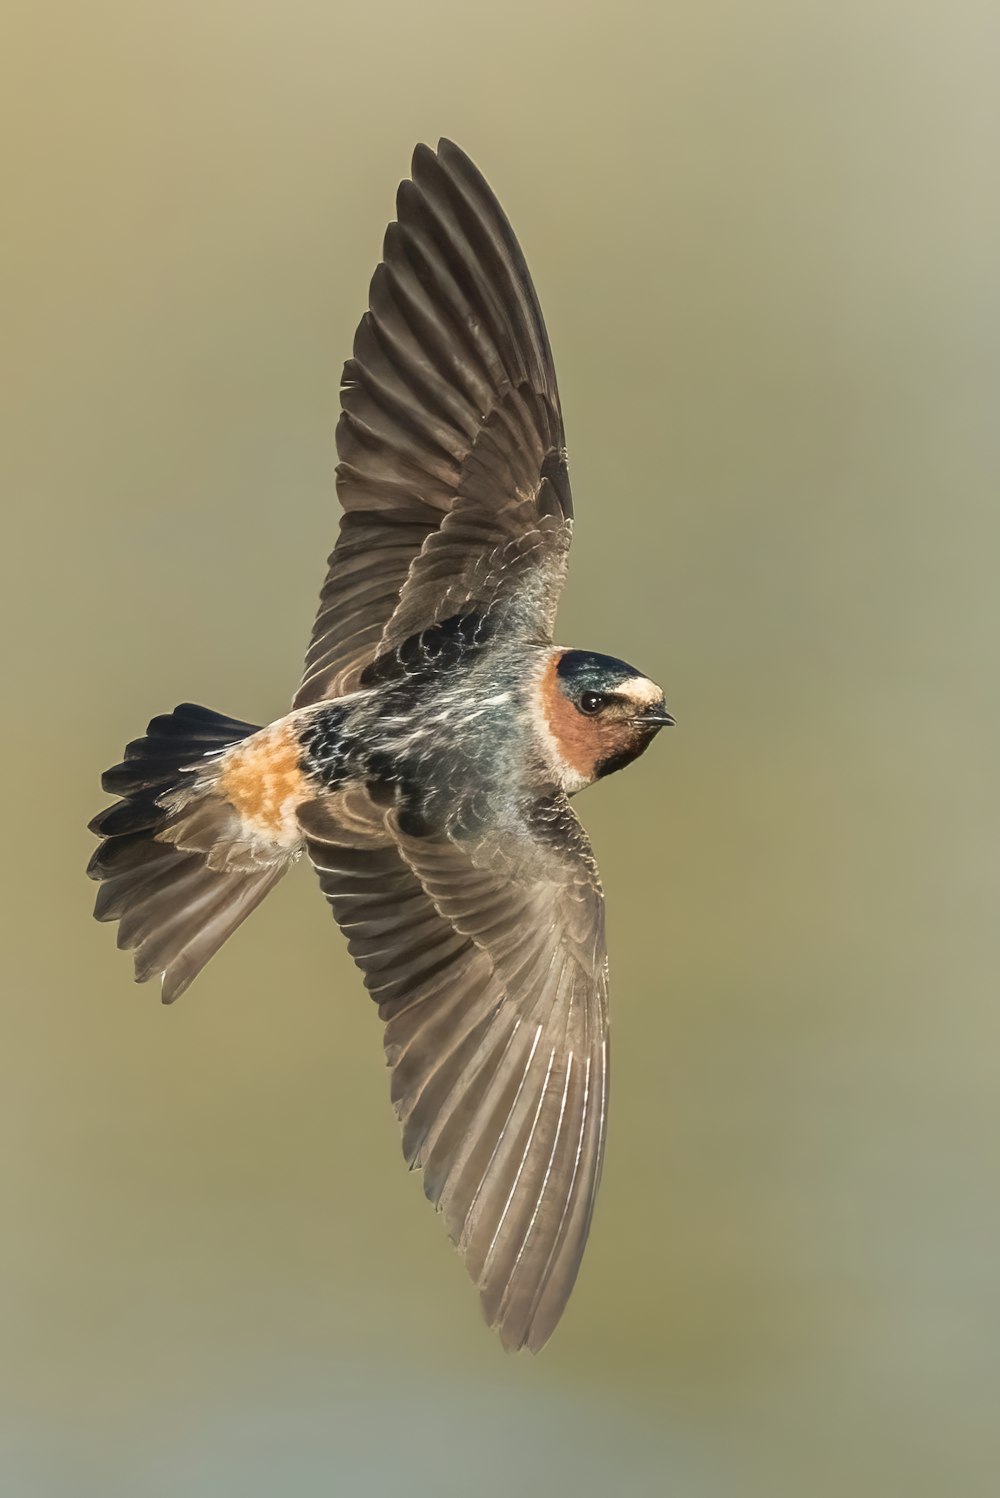 um pássaro voando pelo ar com suas asas abertas